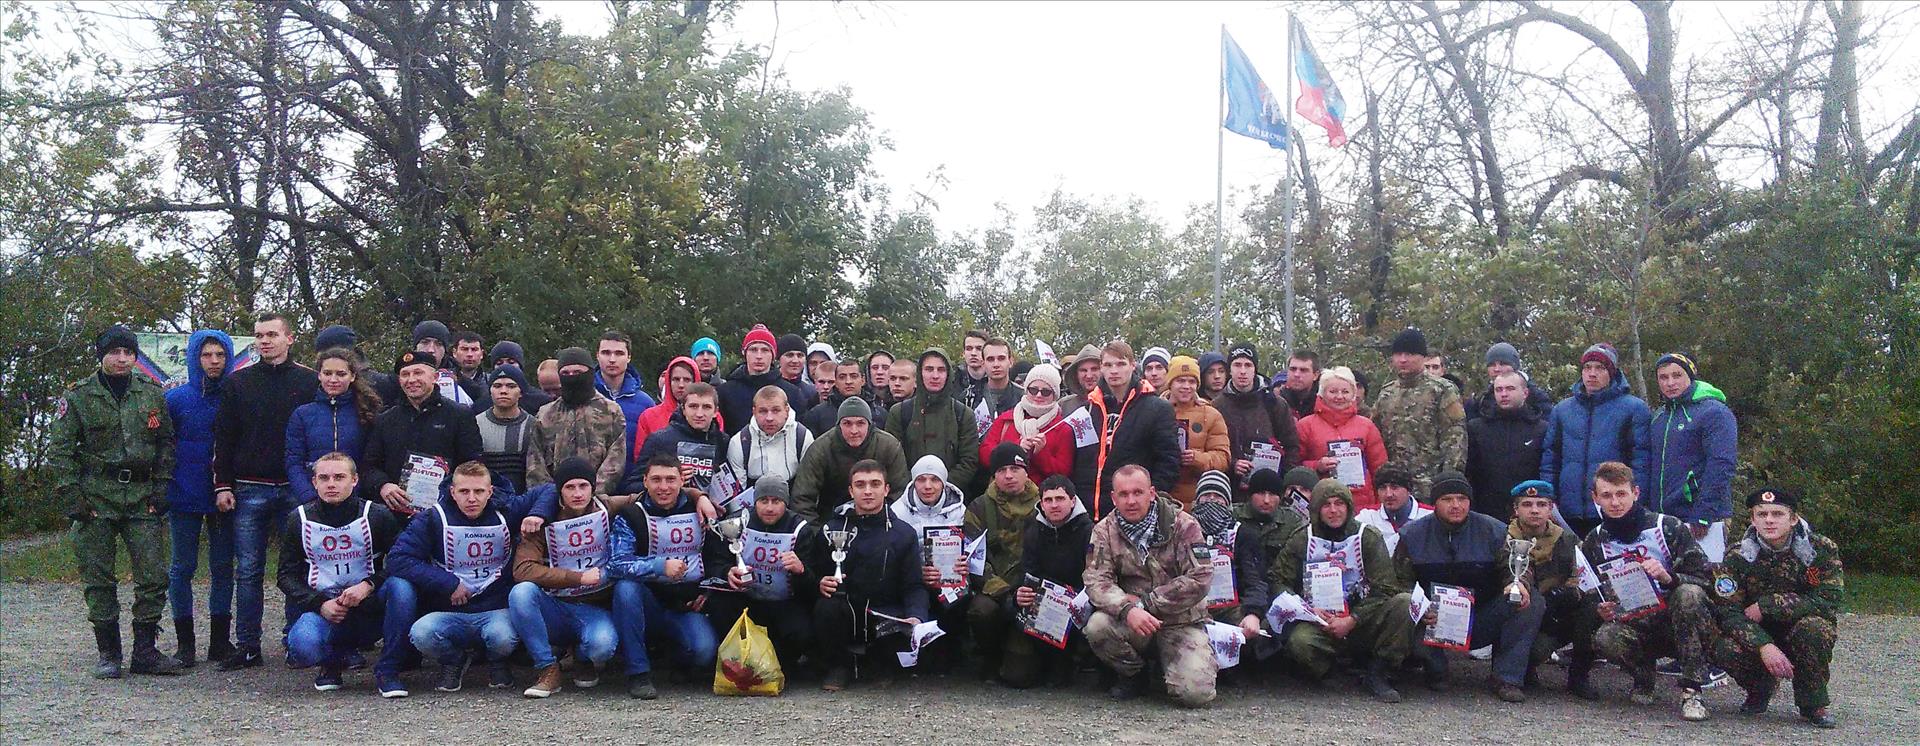 В Донецкой Народной Республике состоялись Республиканские командные соревнования среди молодежи «Забег Героев»